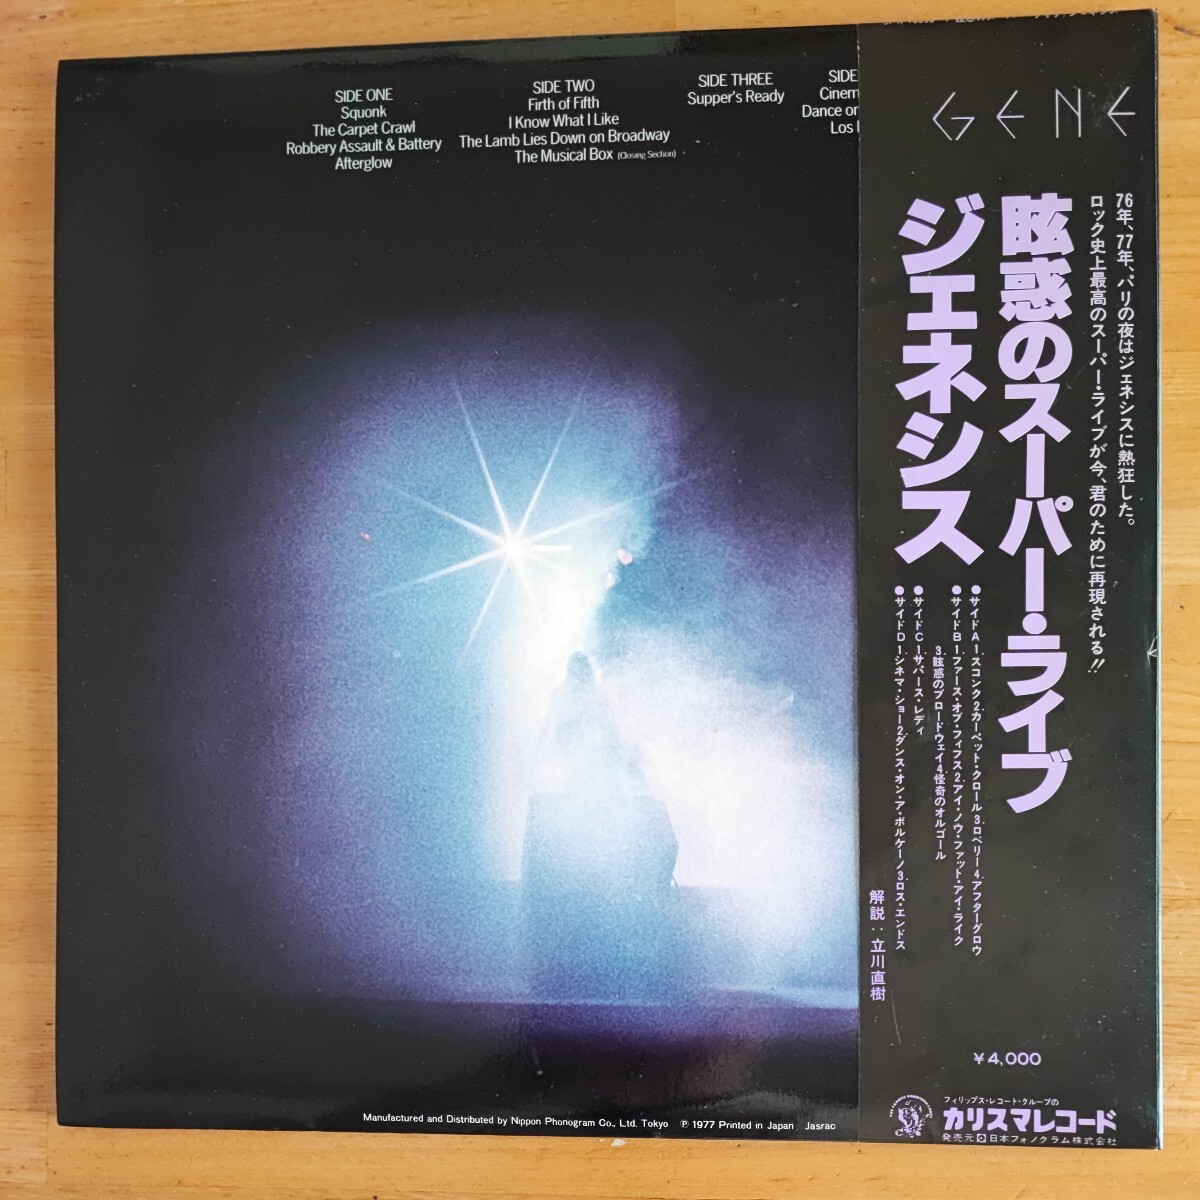 ジェネシス「Seconds Out」LP日本盤帯付